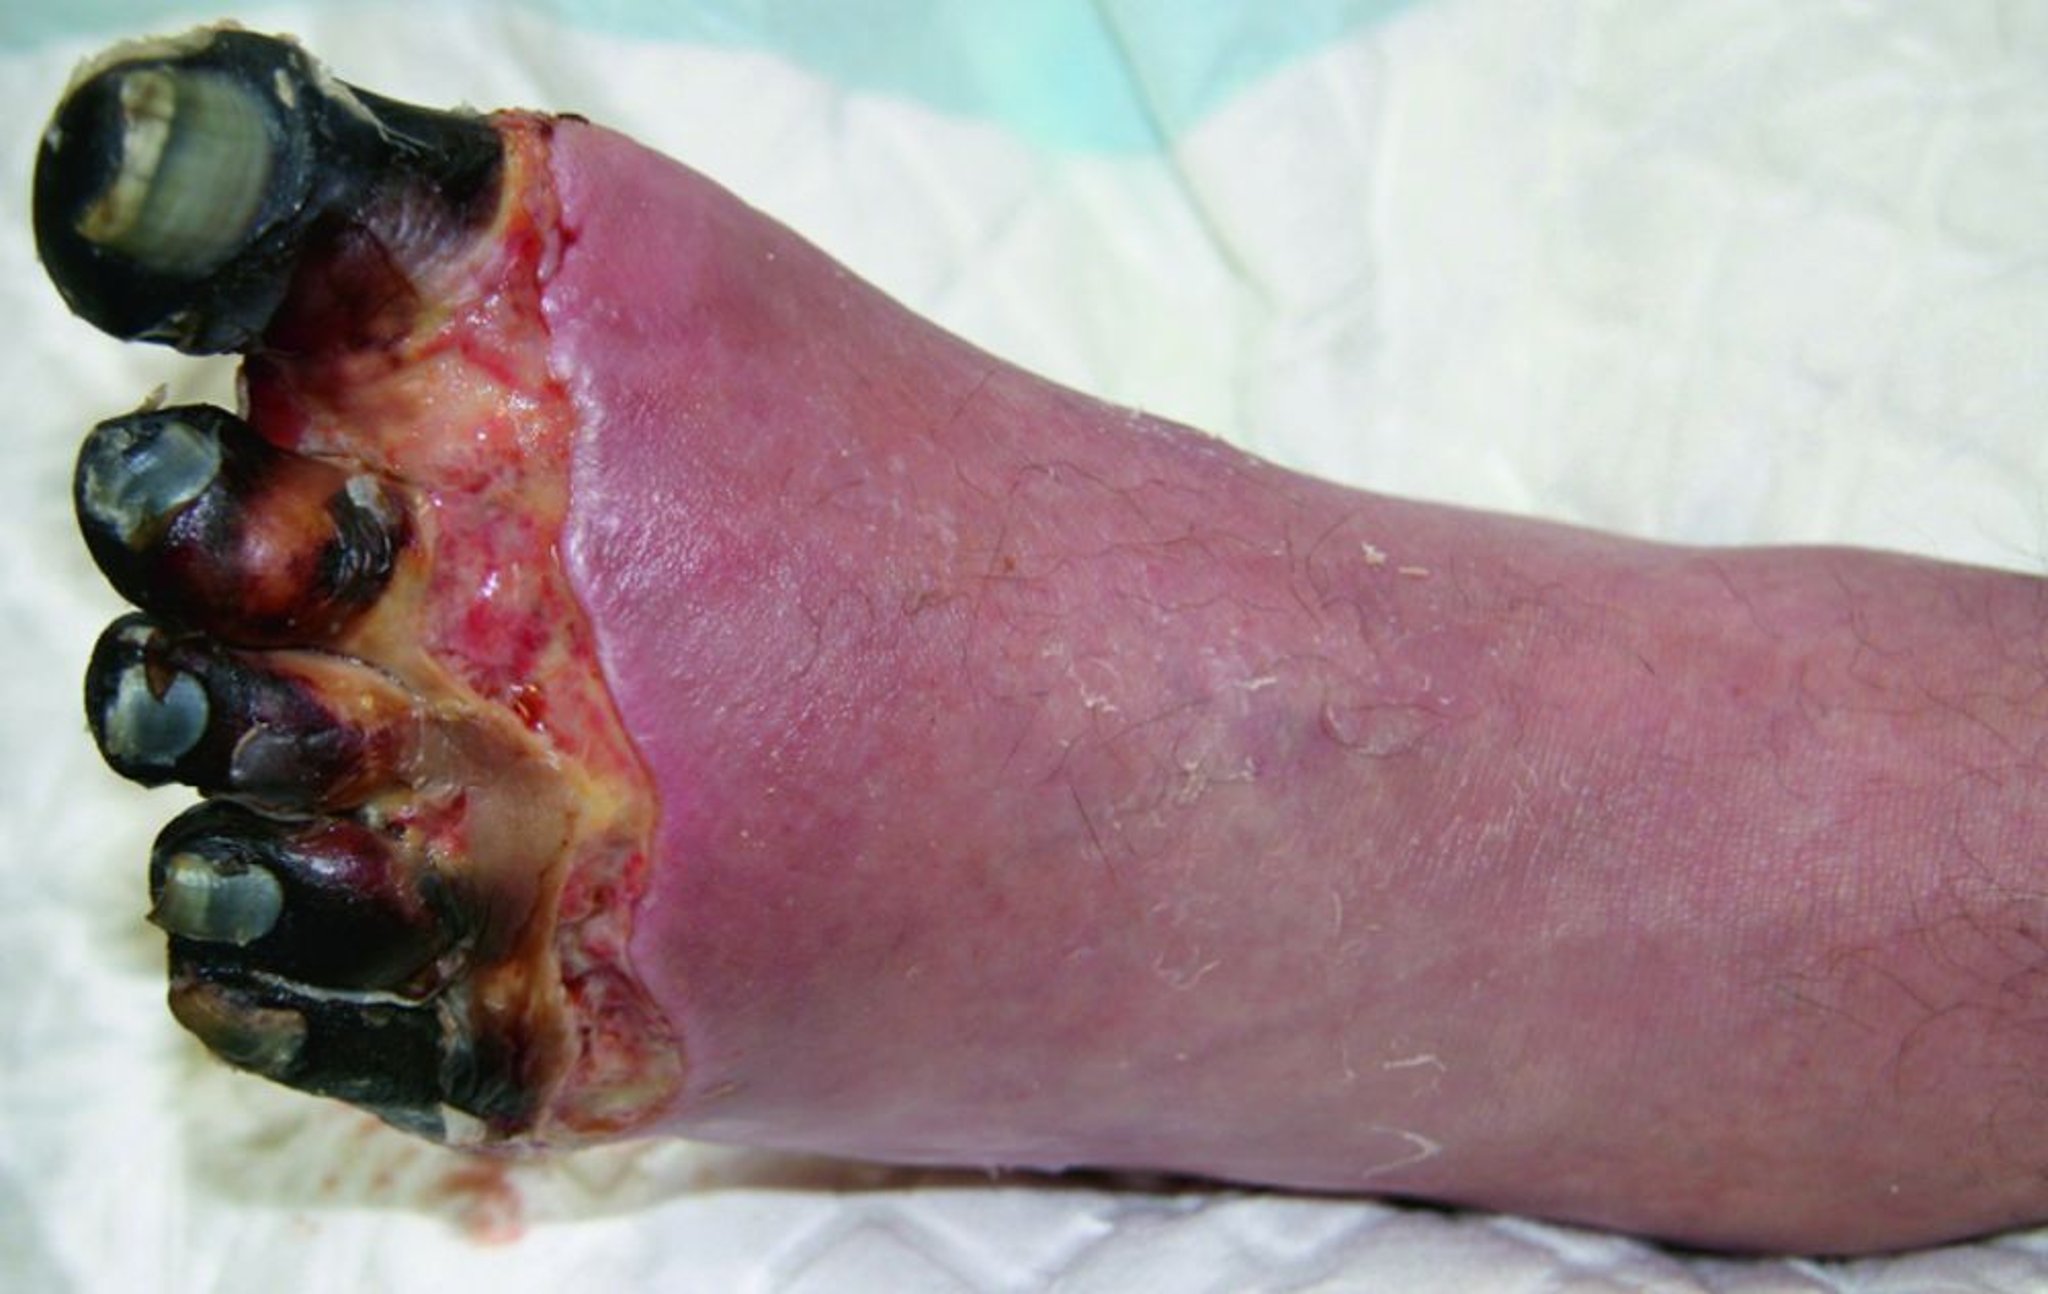 Geladura grave do pé com necrose dos dedos